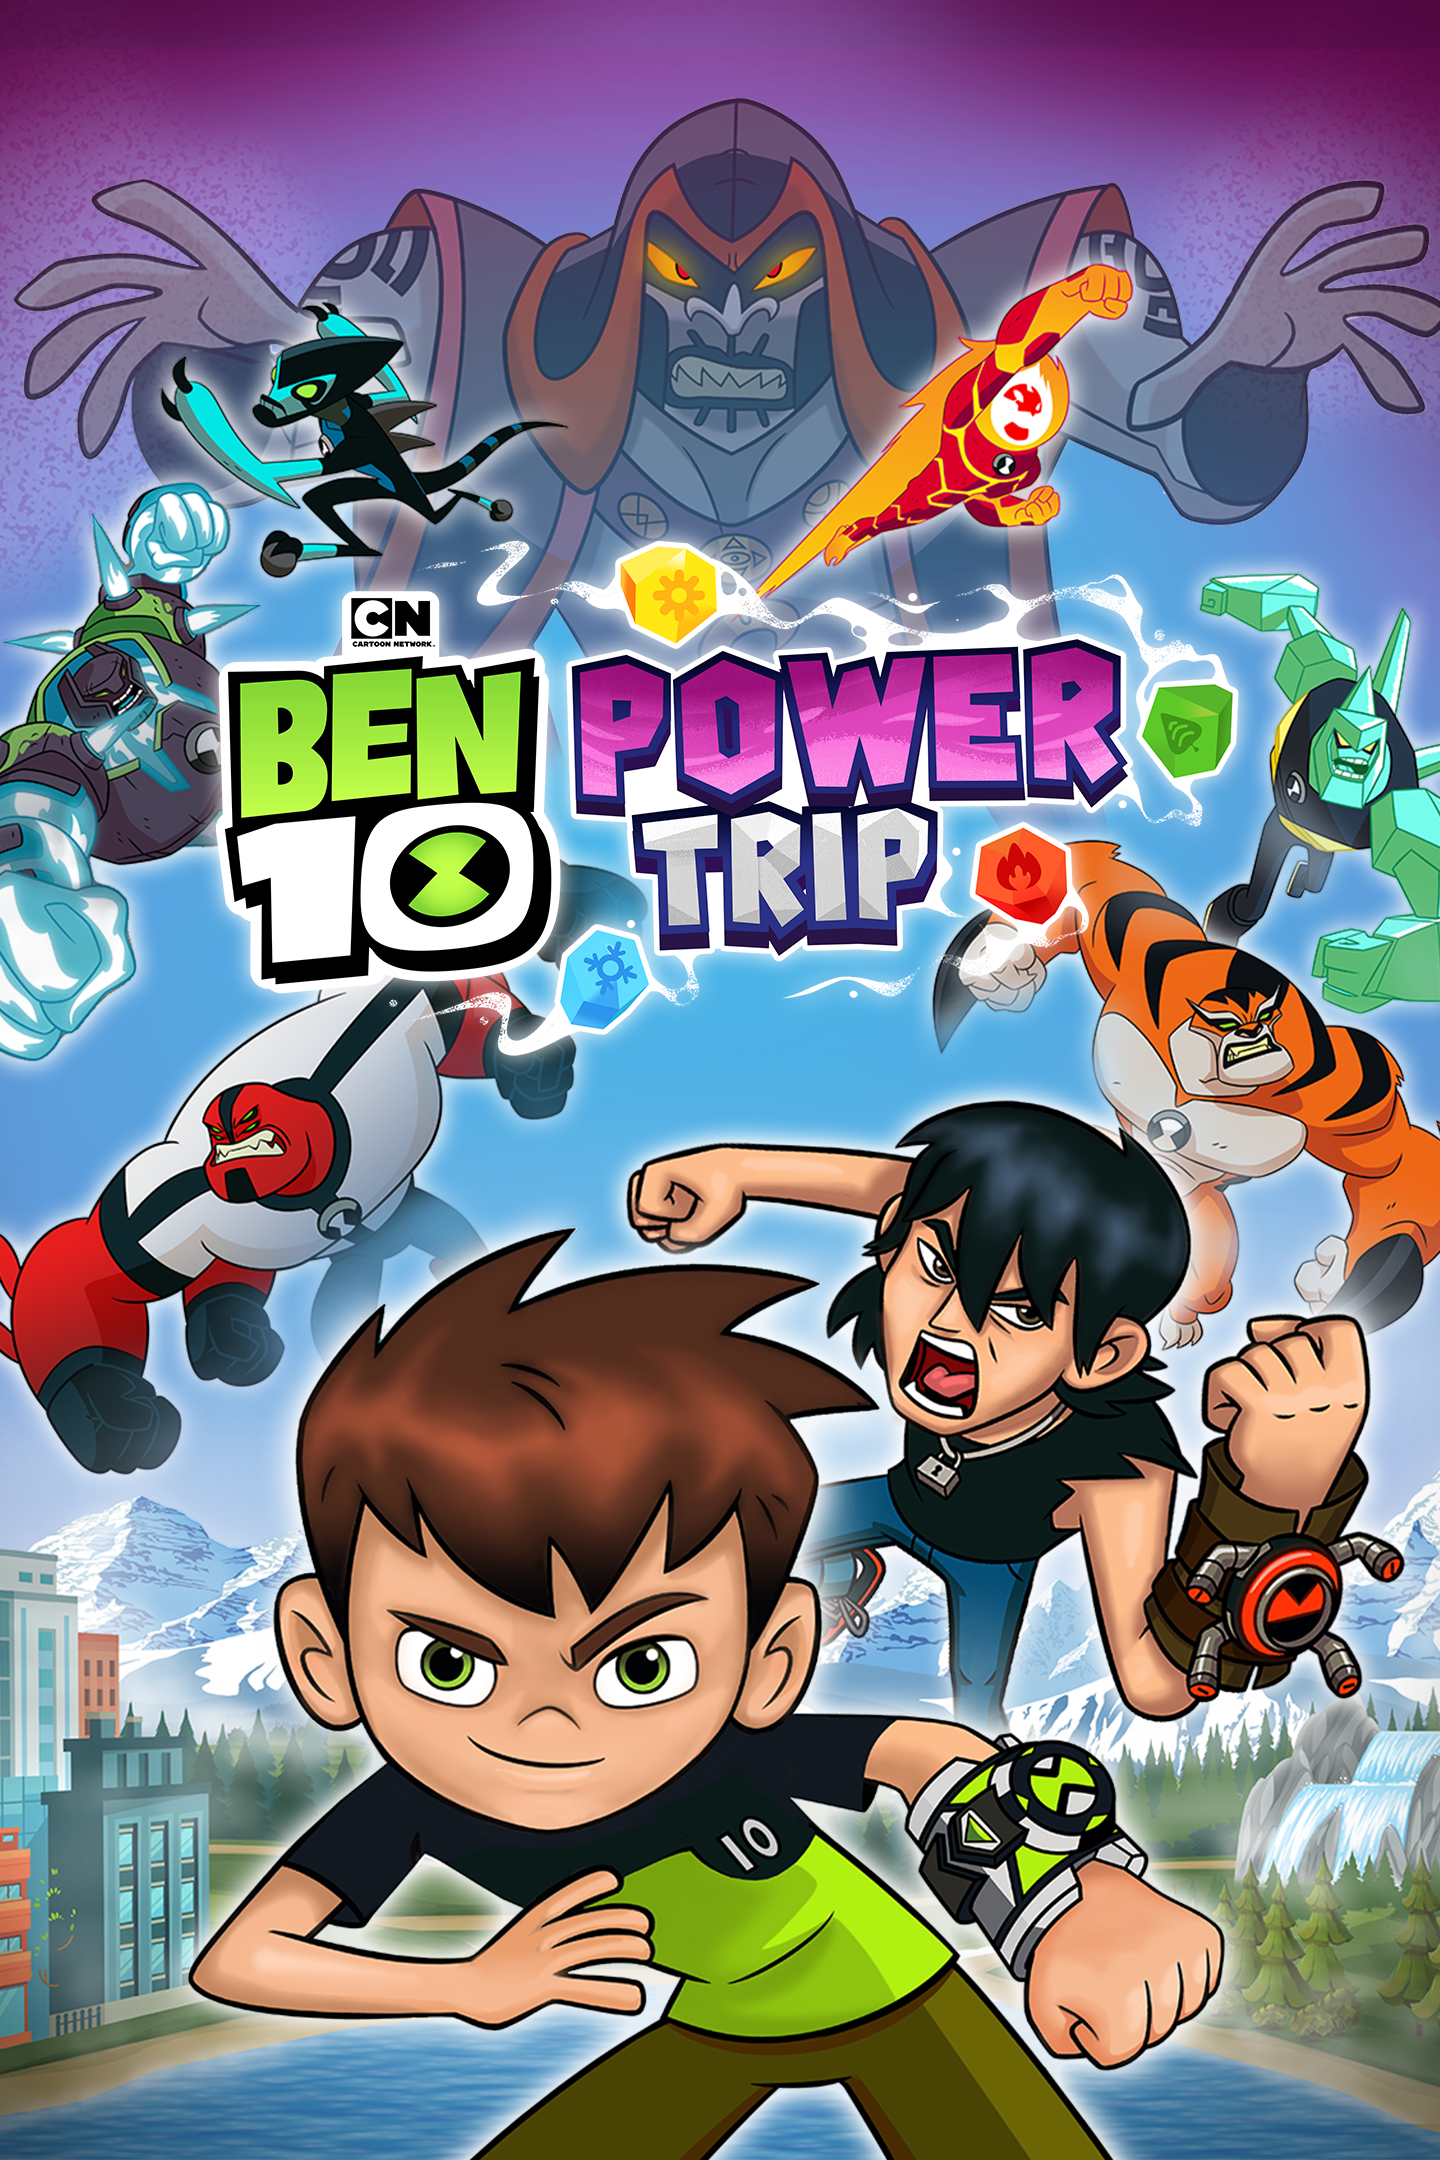 Buy Ben 10: Power Trip - Microsoft Store en-IL